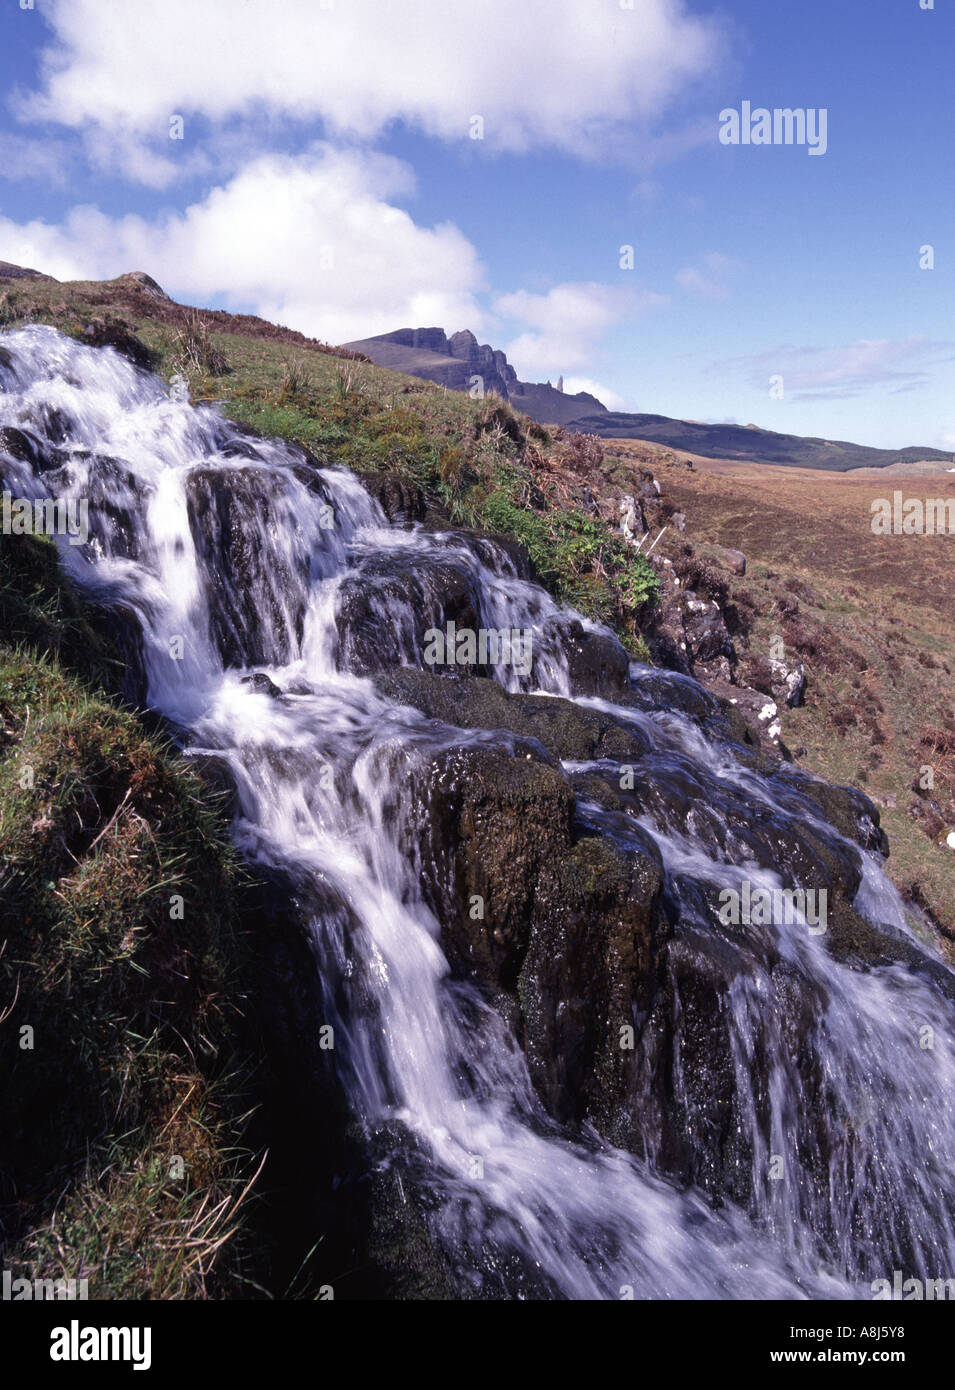 Schottische ländliche felsige Landschaft Landschaft & Brides Veil Wasserfall Felsen Blick auf Hügel Old man of Storr Berg Isle of Skye Highlands Scotland Großbritannien Stockfoto